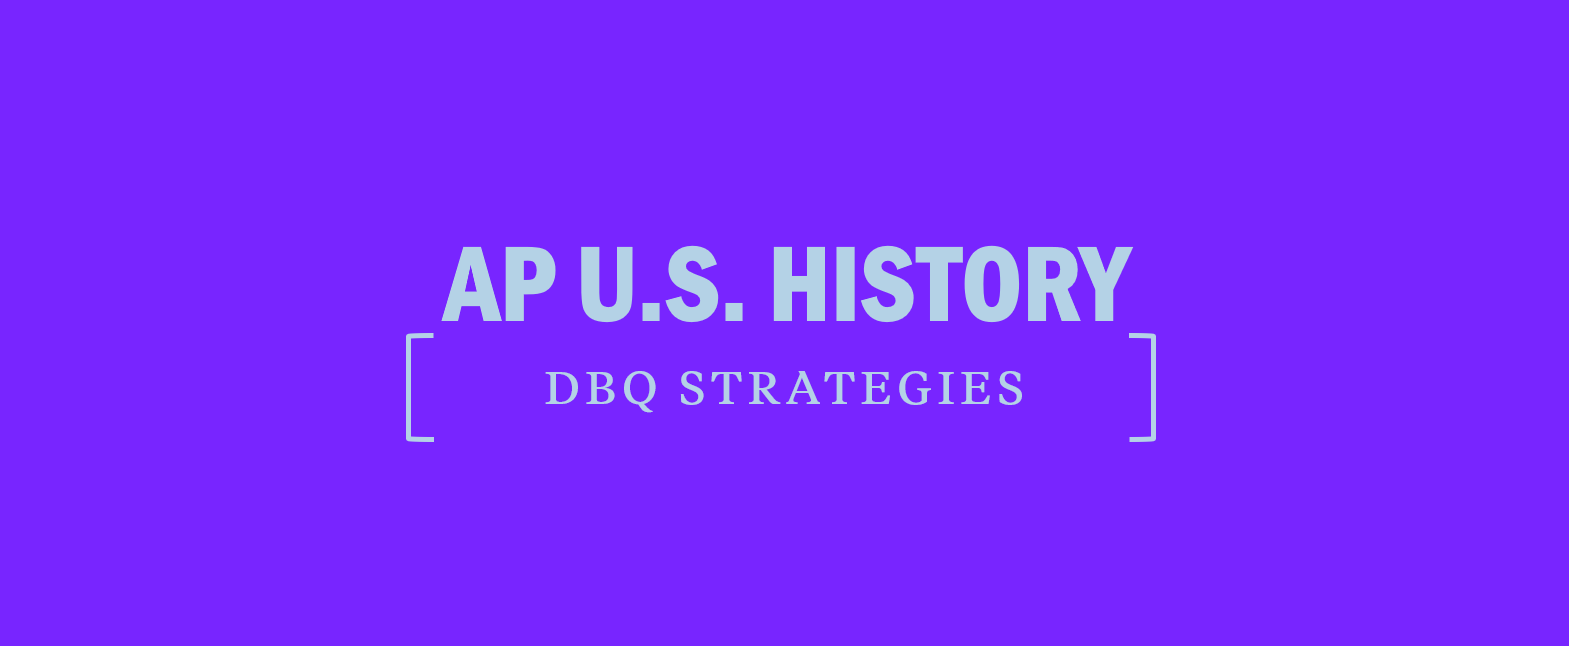 APUSH DBQ Strategies